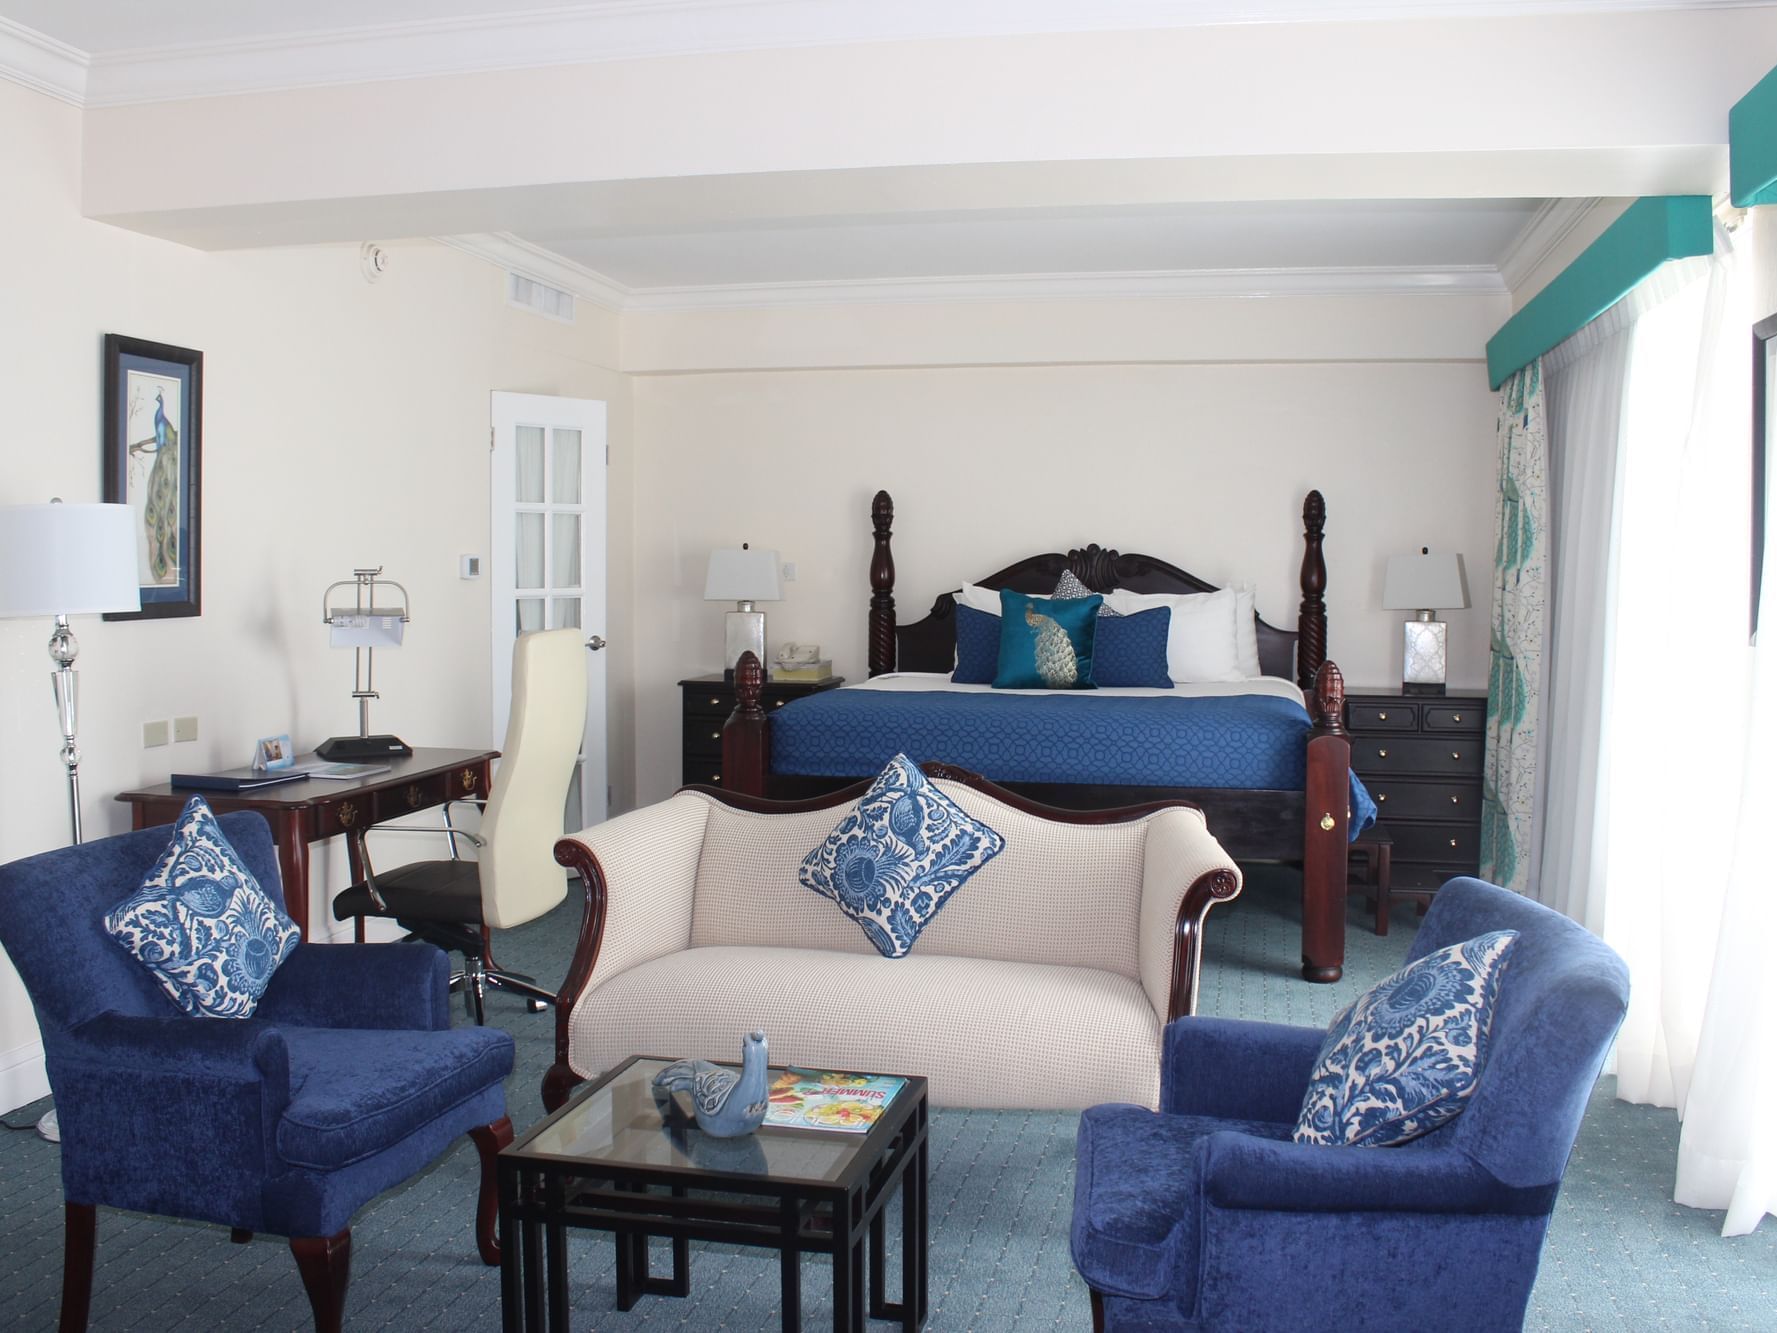 Princess Royal Suite interior at Jamaica Pegasus Hotel